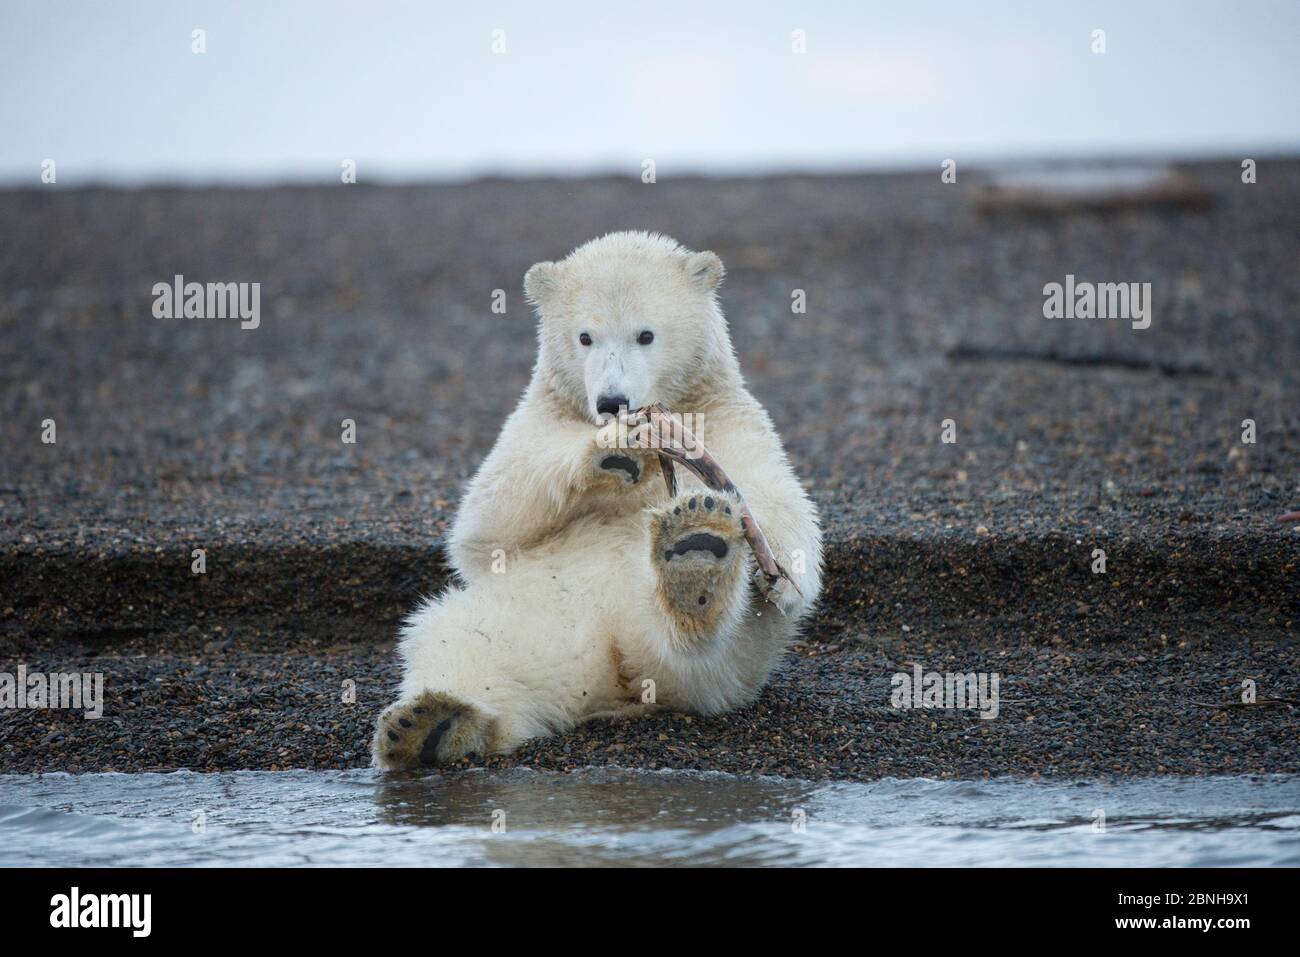 Orso polare (Ursus maritimus) cucciolo giocando con bastone al bordo dell'acqua, Bernard Spit, 1002 Area, Arctic National Wildlife Refuge, North Slope, Alaska, Stati Uniti Foto Stock